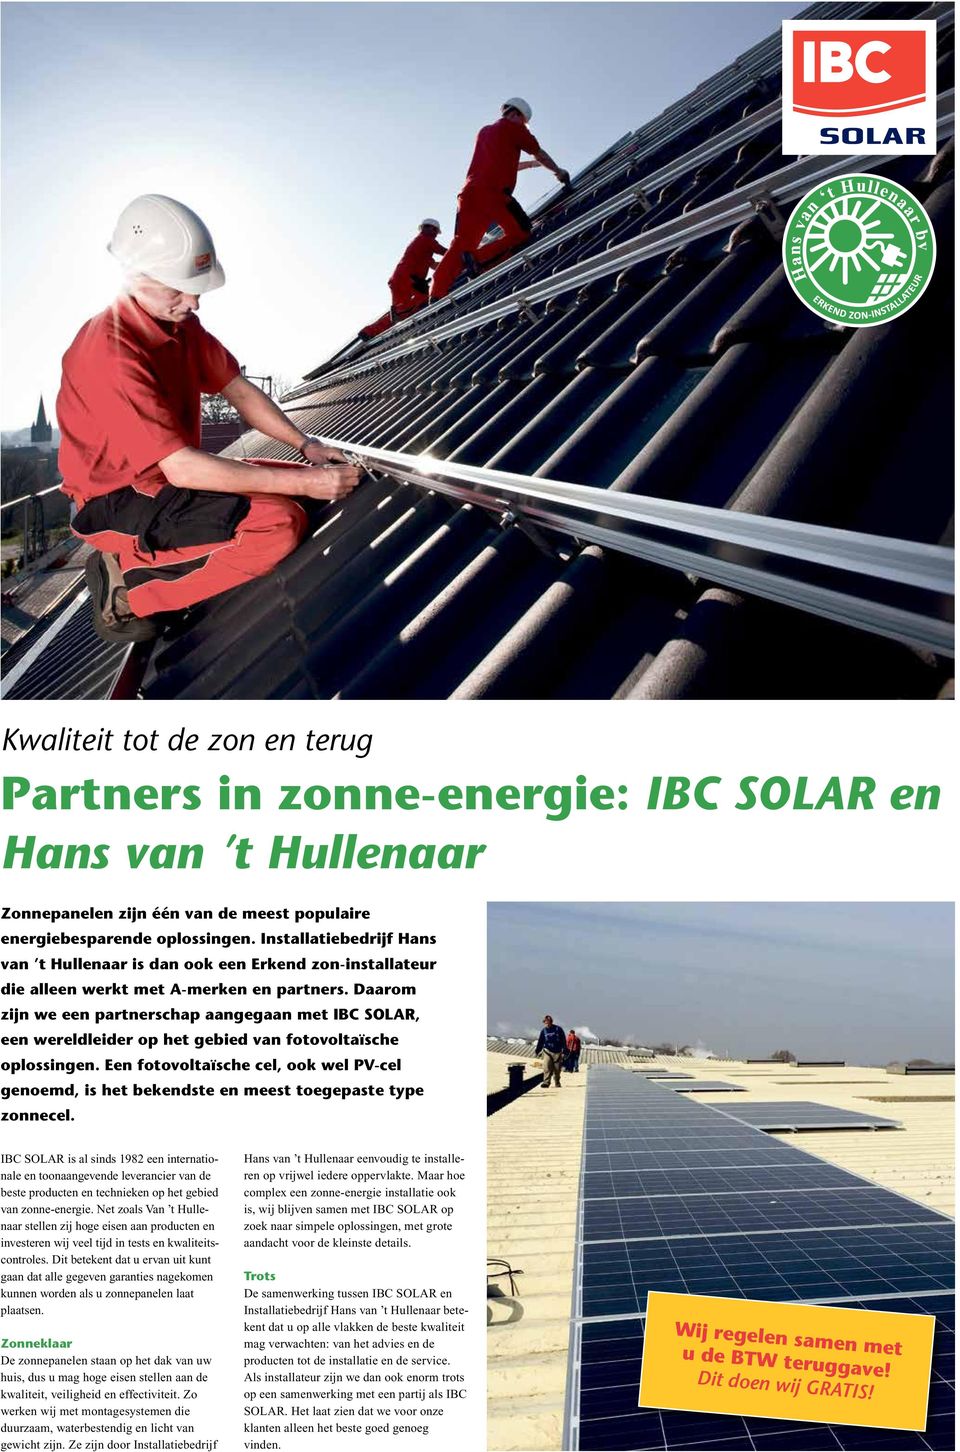 Daarom zijn we een partnerschap aangegaan met IBC SOLAR, een wereldleider op het gebied van fotovoltaïsche oplossingen.